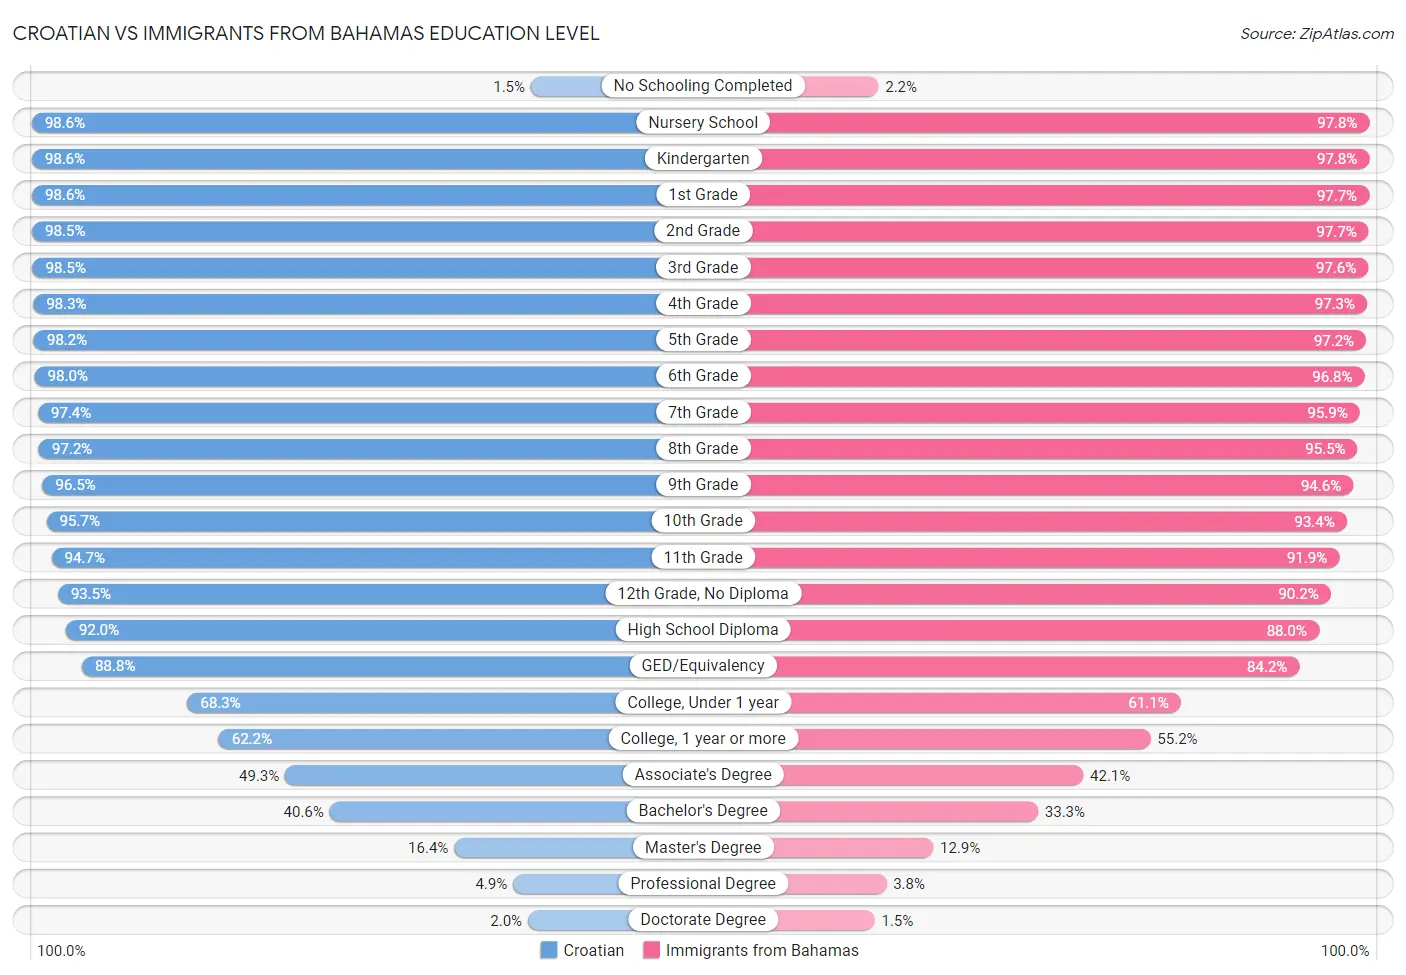 Croatian vs Immigrants from Bahamas Education Level